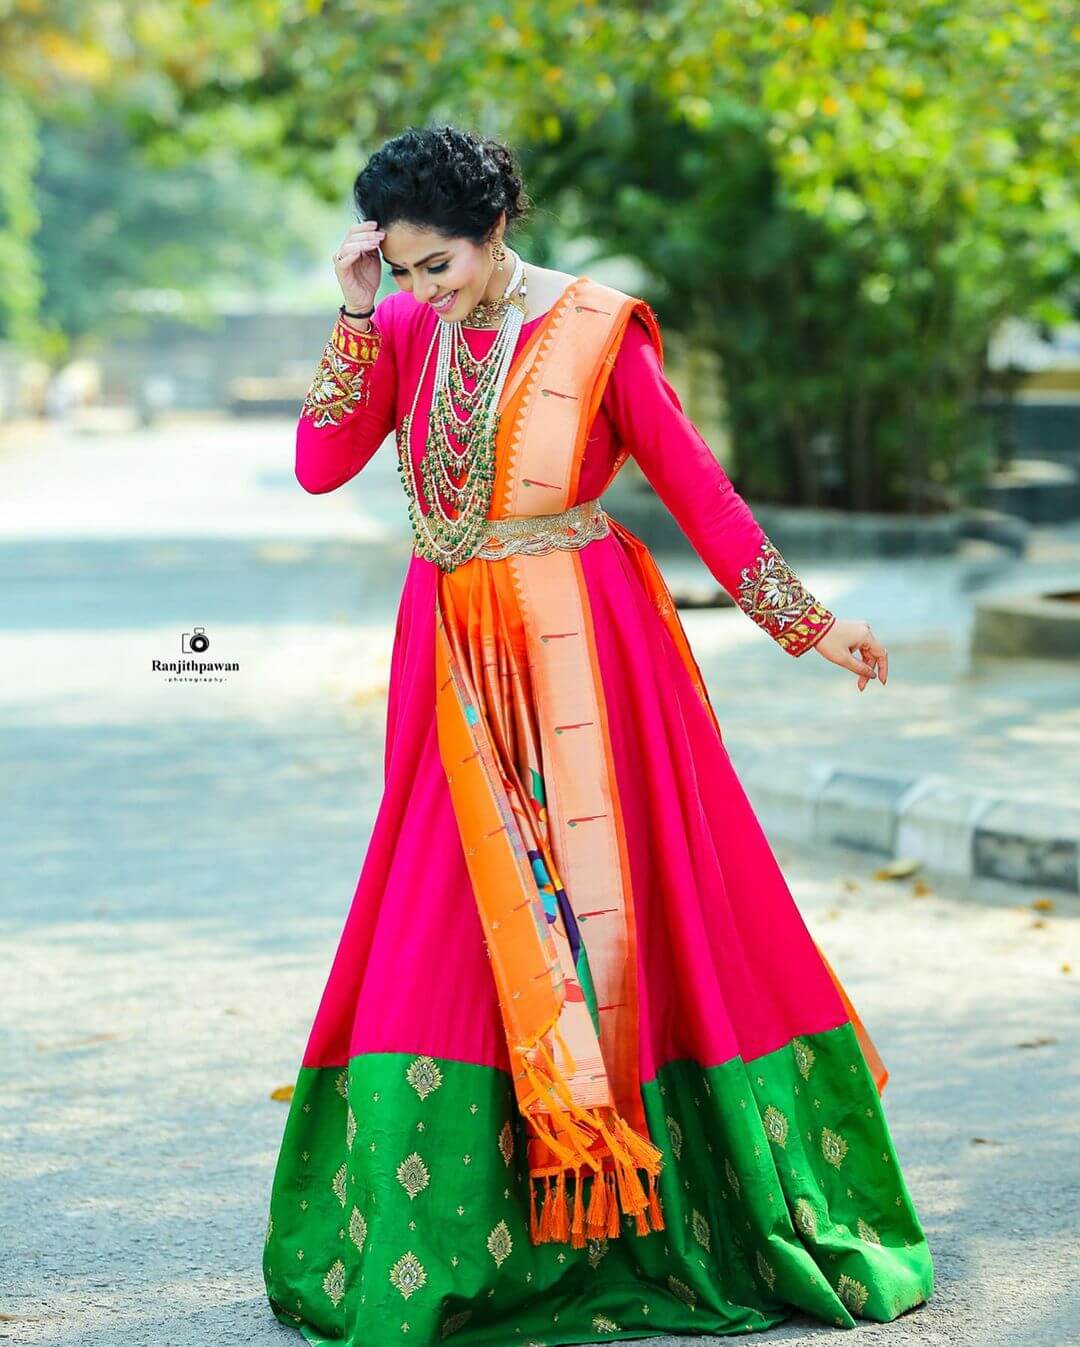 Sadha Ethnic Stylish Outfits With Elegant Looks - K4 Fashion